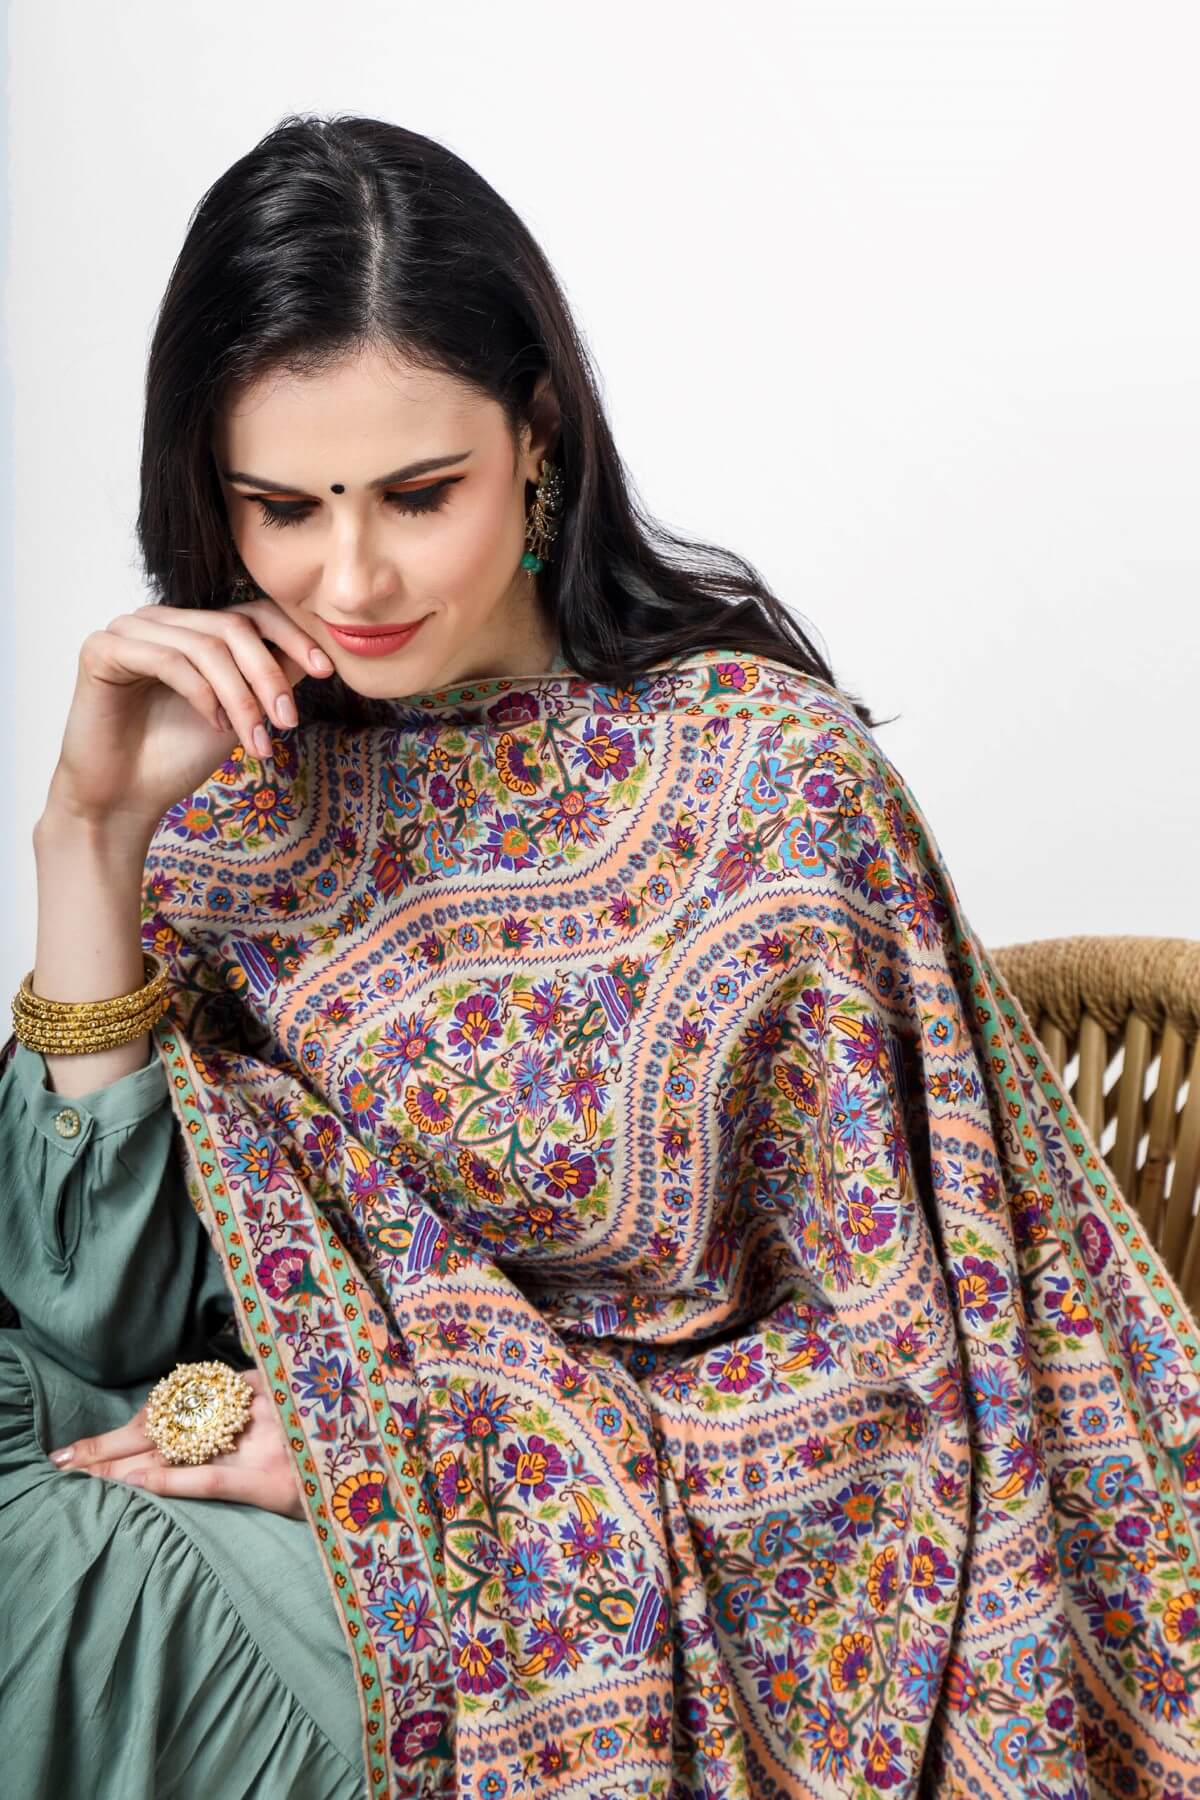 PASHMINA CANADA - Bahaar e fiza pashmina kalamkaari shawl